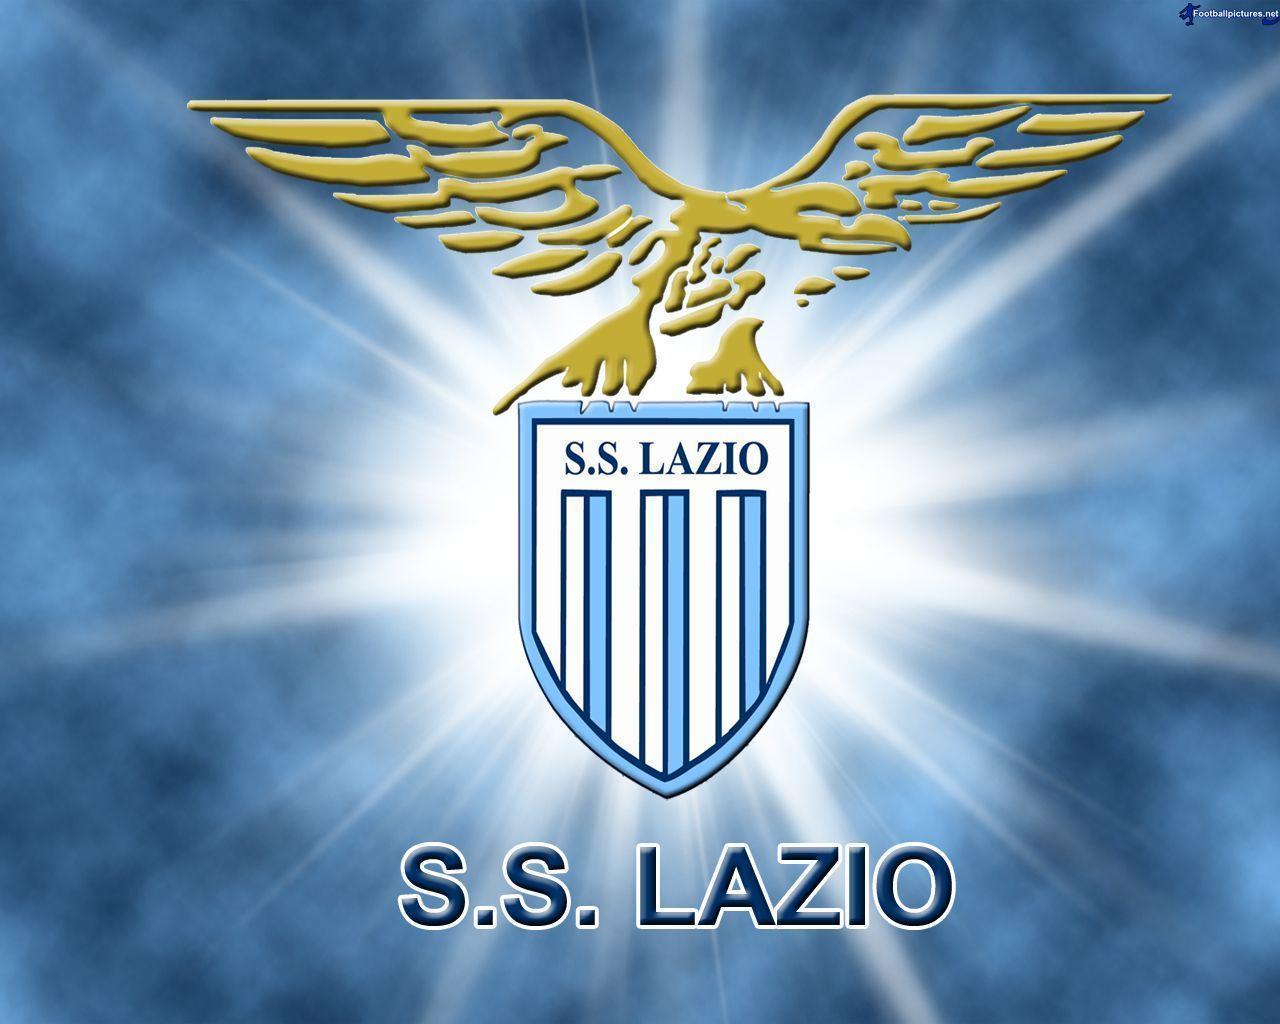 Lazio picture, Football Wallpaper and Photo